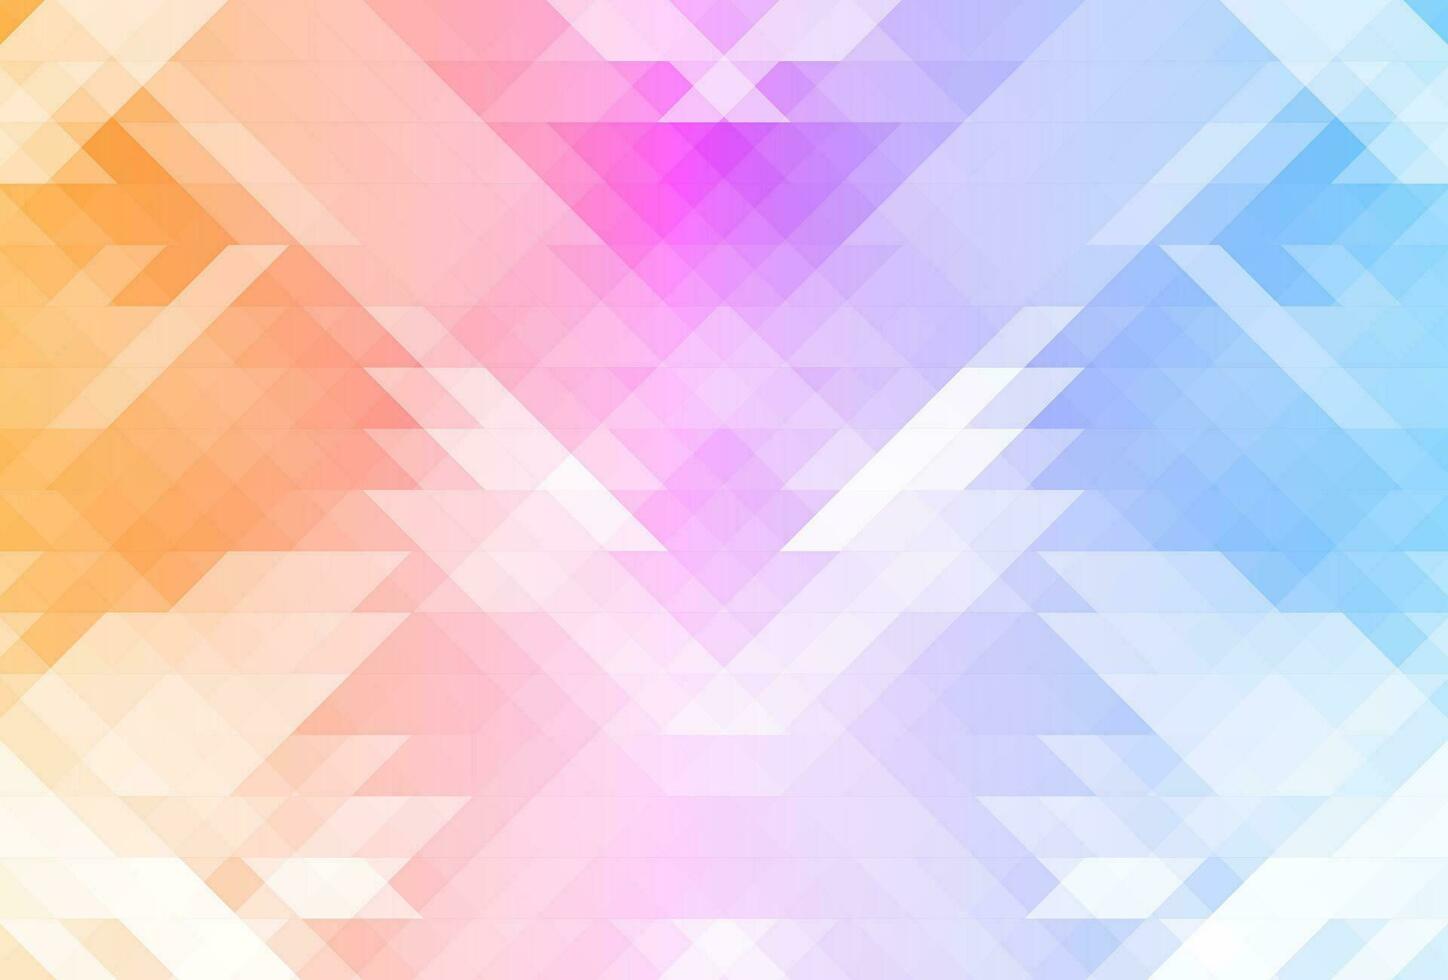 astratto sfondo con colorato triangoli vettore